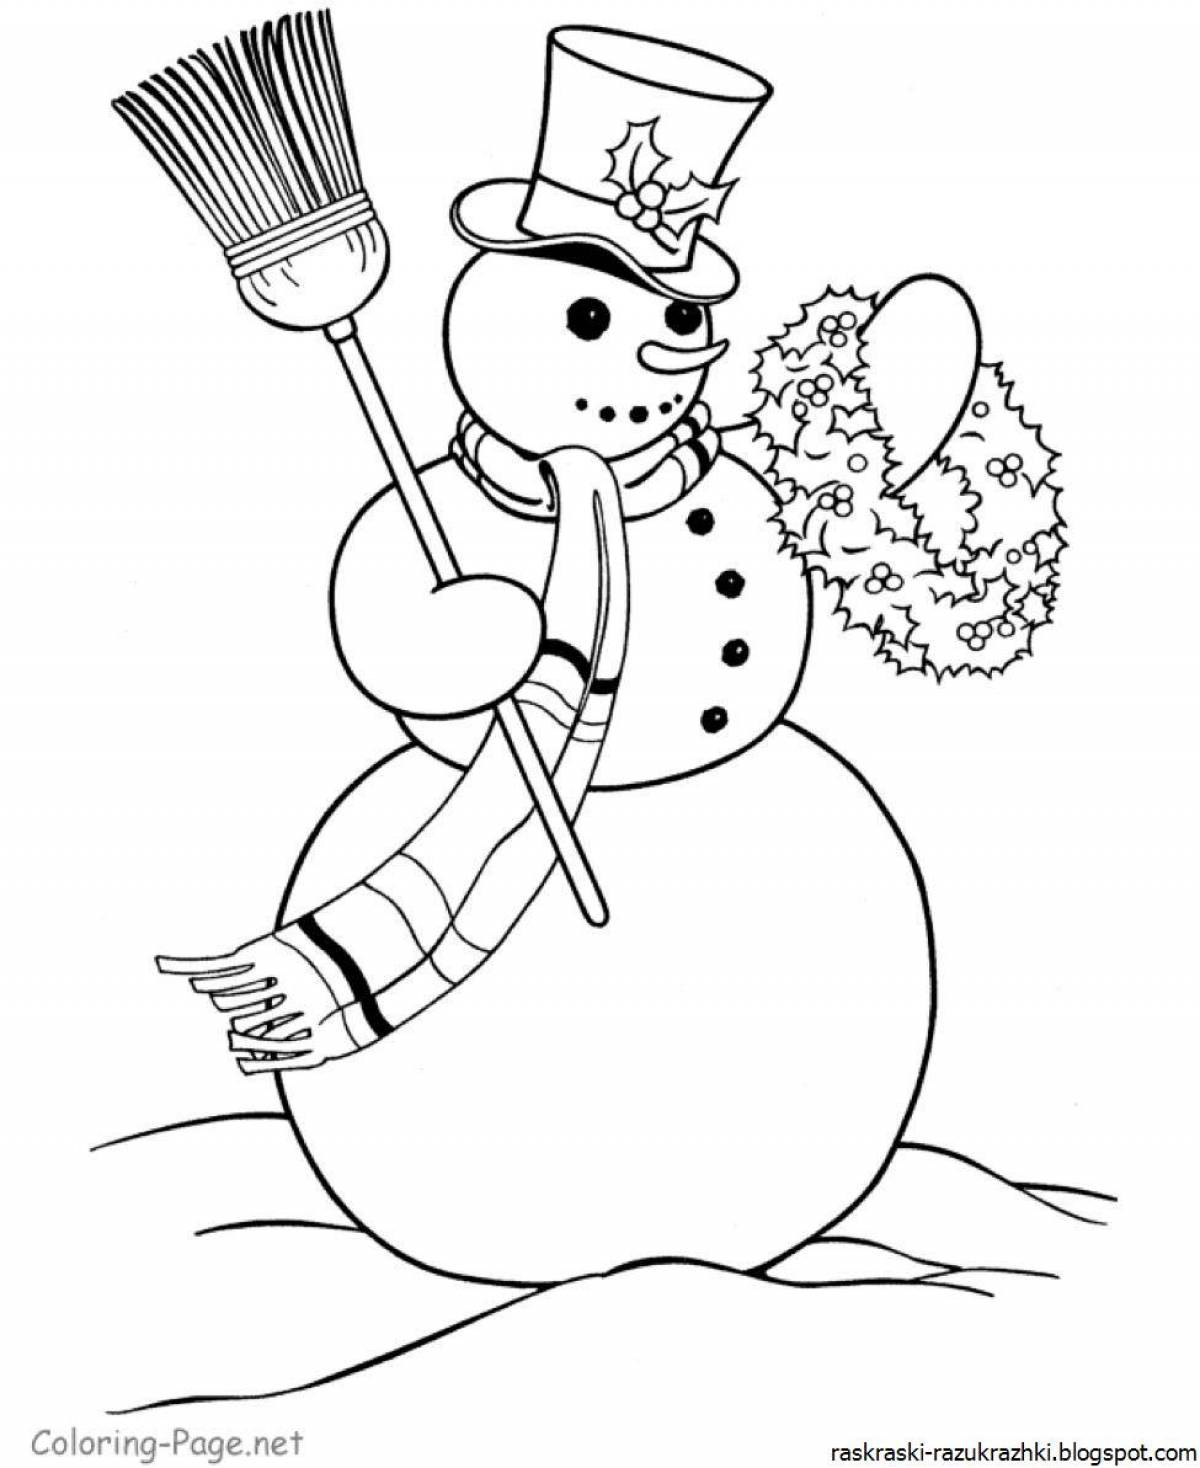 Раскраска счастливый снеговик для детей